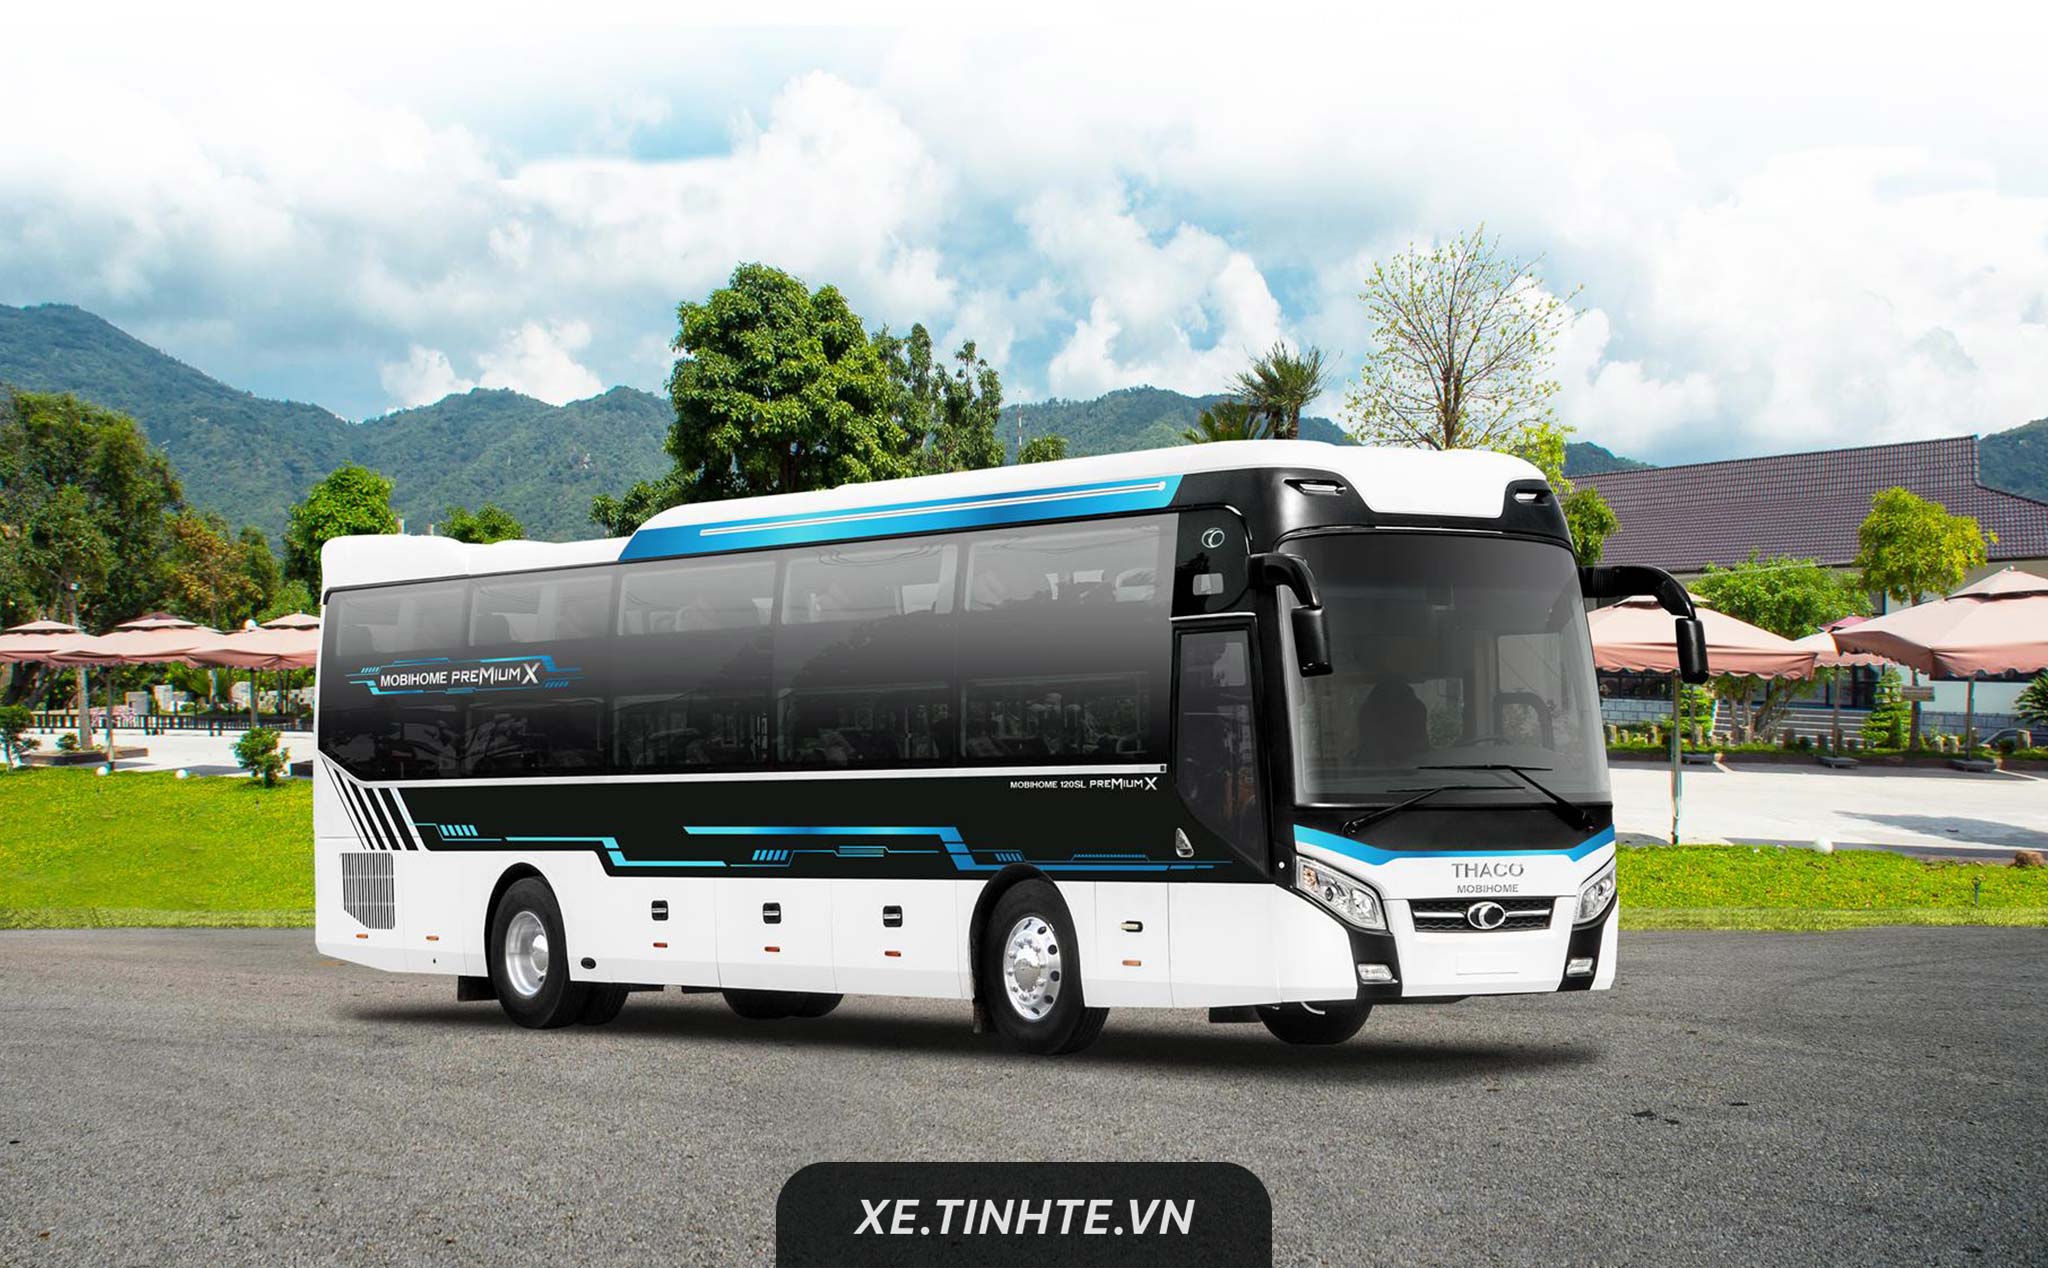 Thaco giới thiệu xe bus giường nằm thế hệ mới: Thaco Mobihome Luxury và Thaco Mobihome Premium